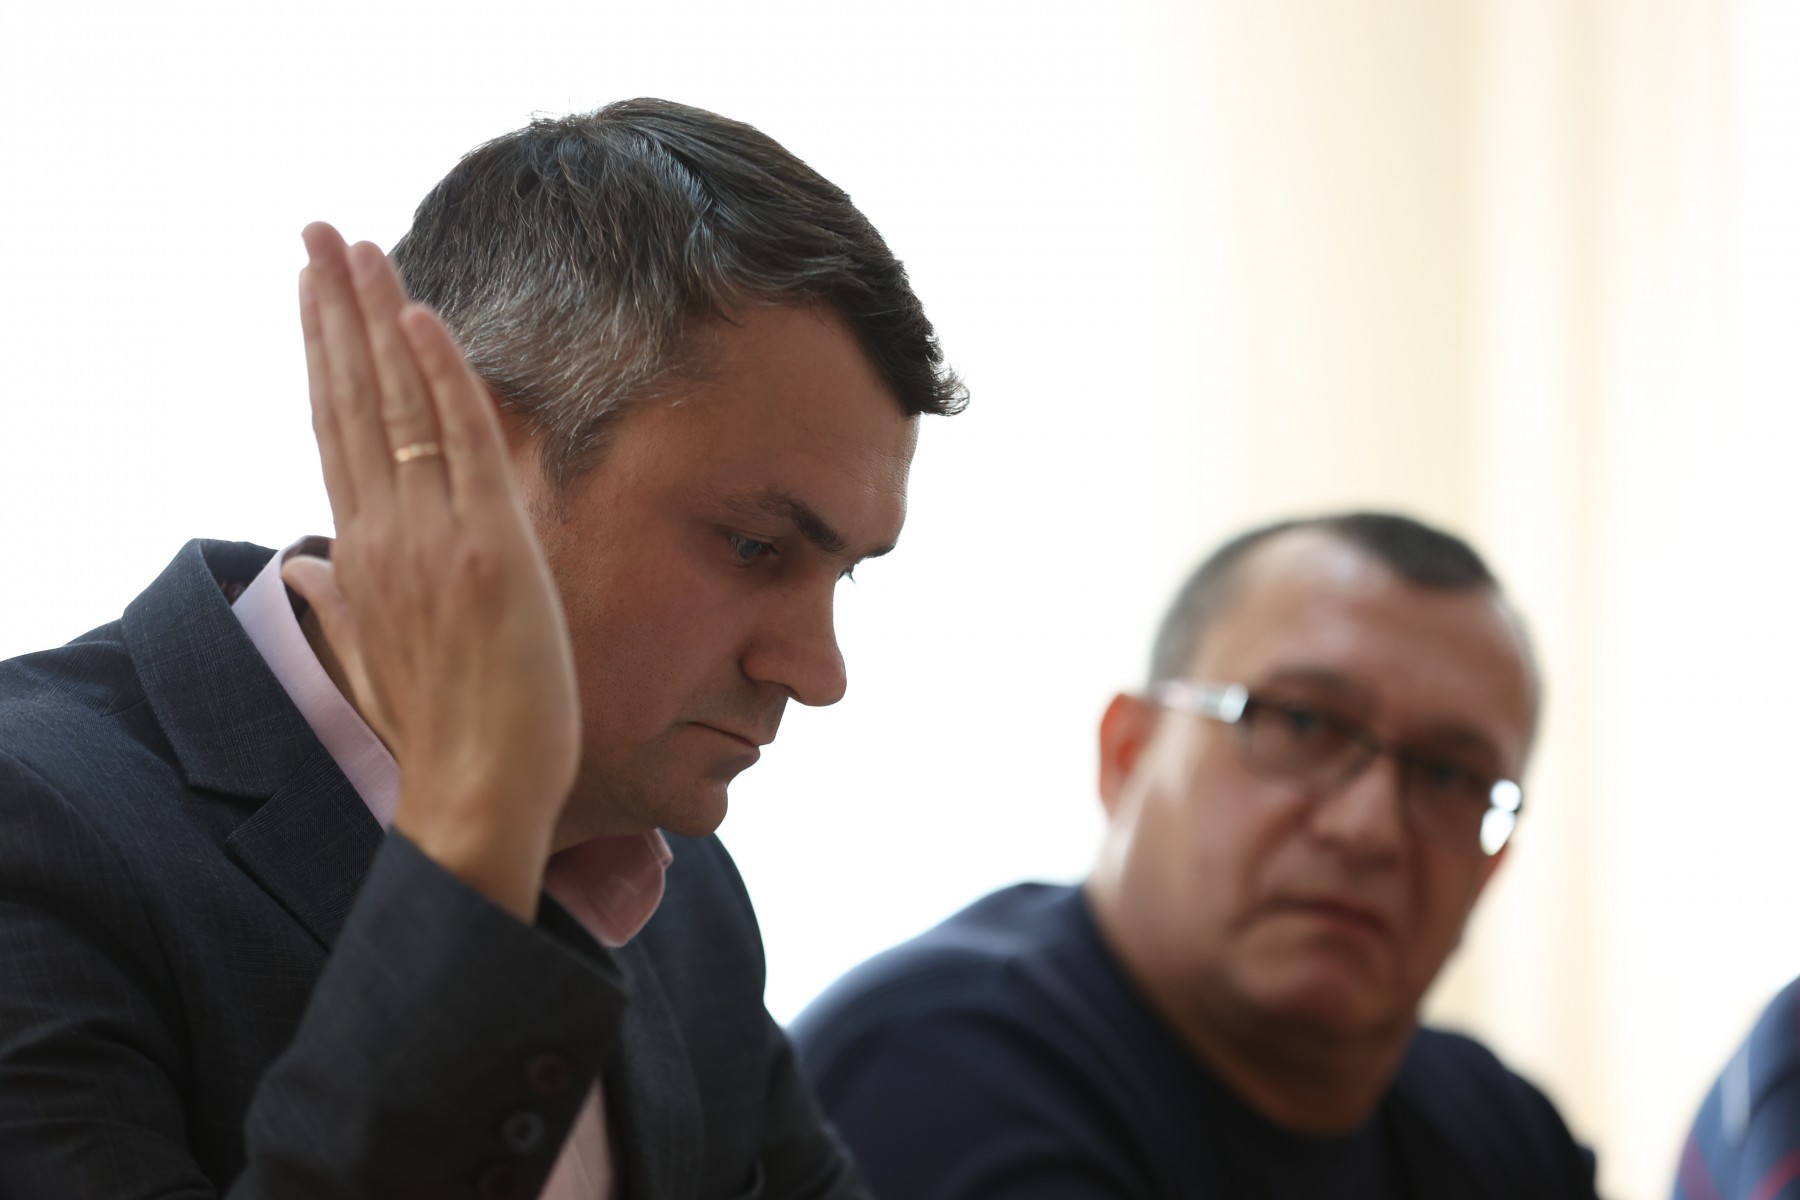 Юрий Оносов настаивал на включение в повестку вопросов, для решения которых у депутатов нет полномочий. Фото Владимира Коцюбы-Белых